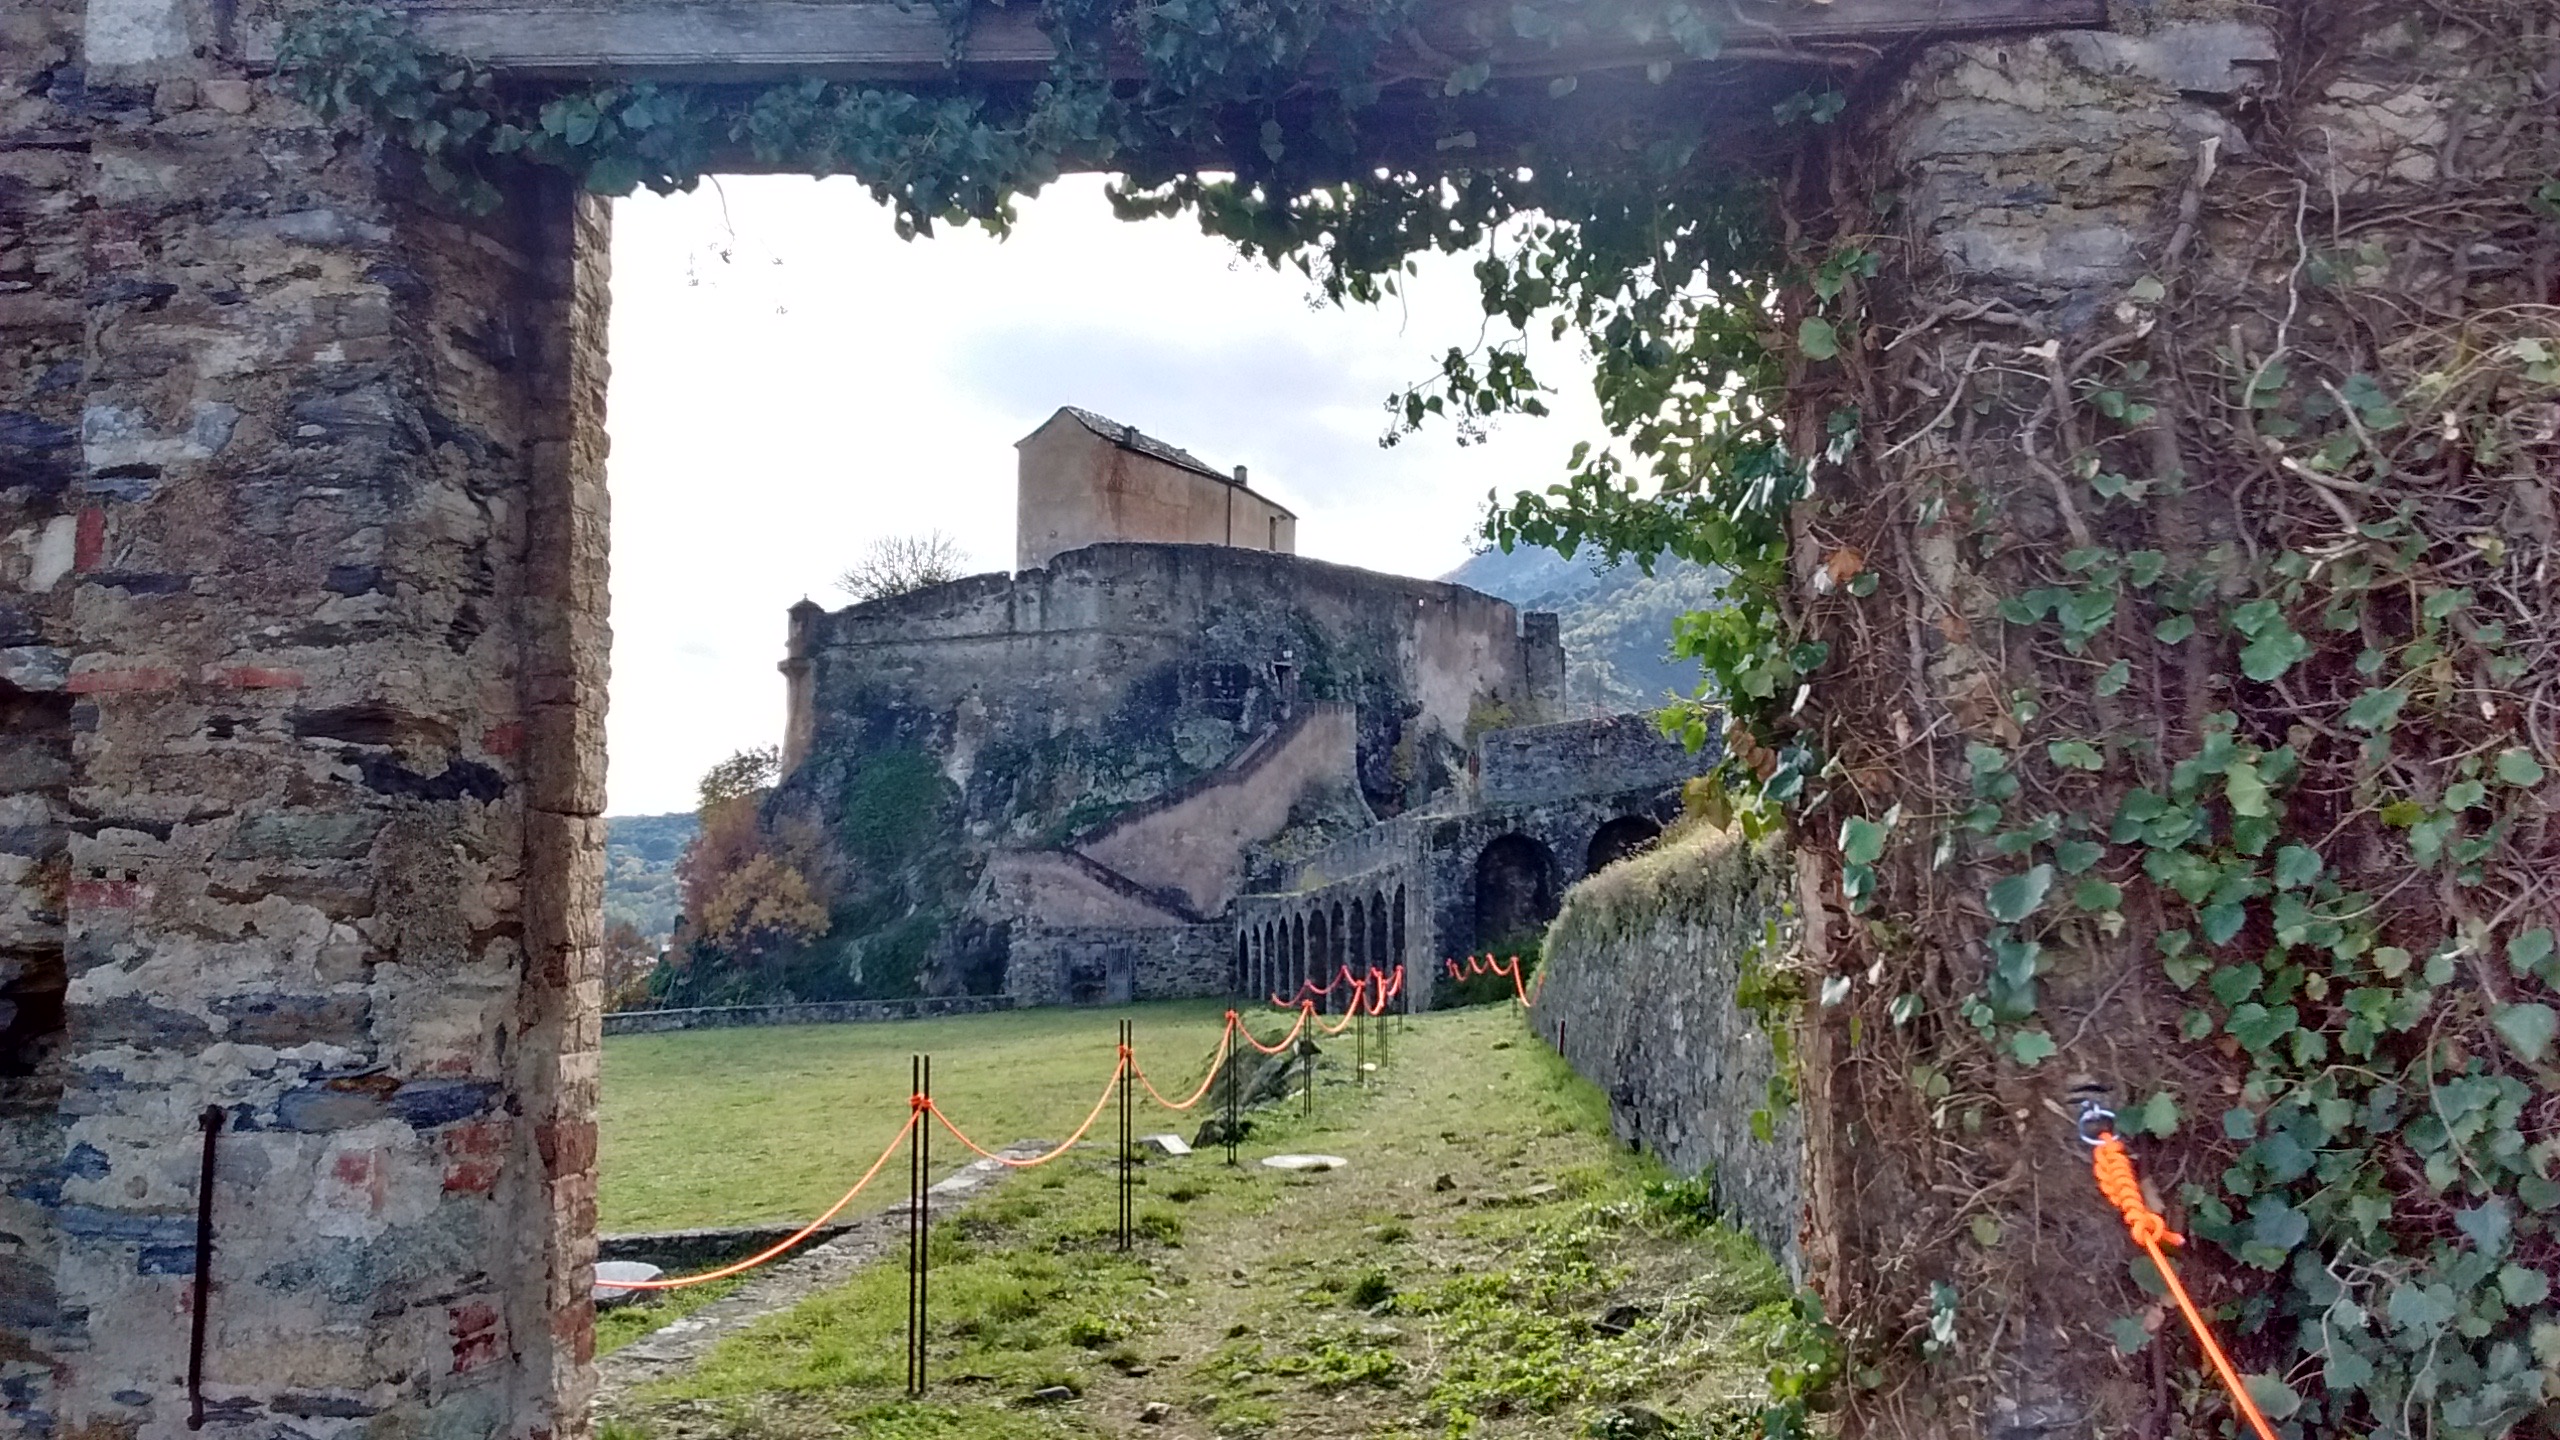 Musée de la Corse : A citadella di Corti, Une citadelle pour horizon